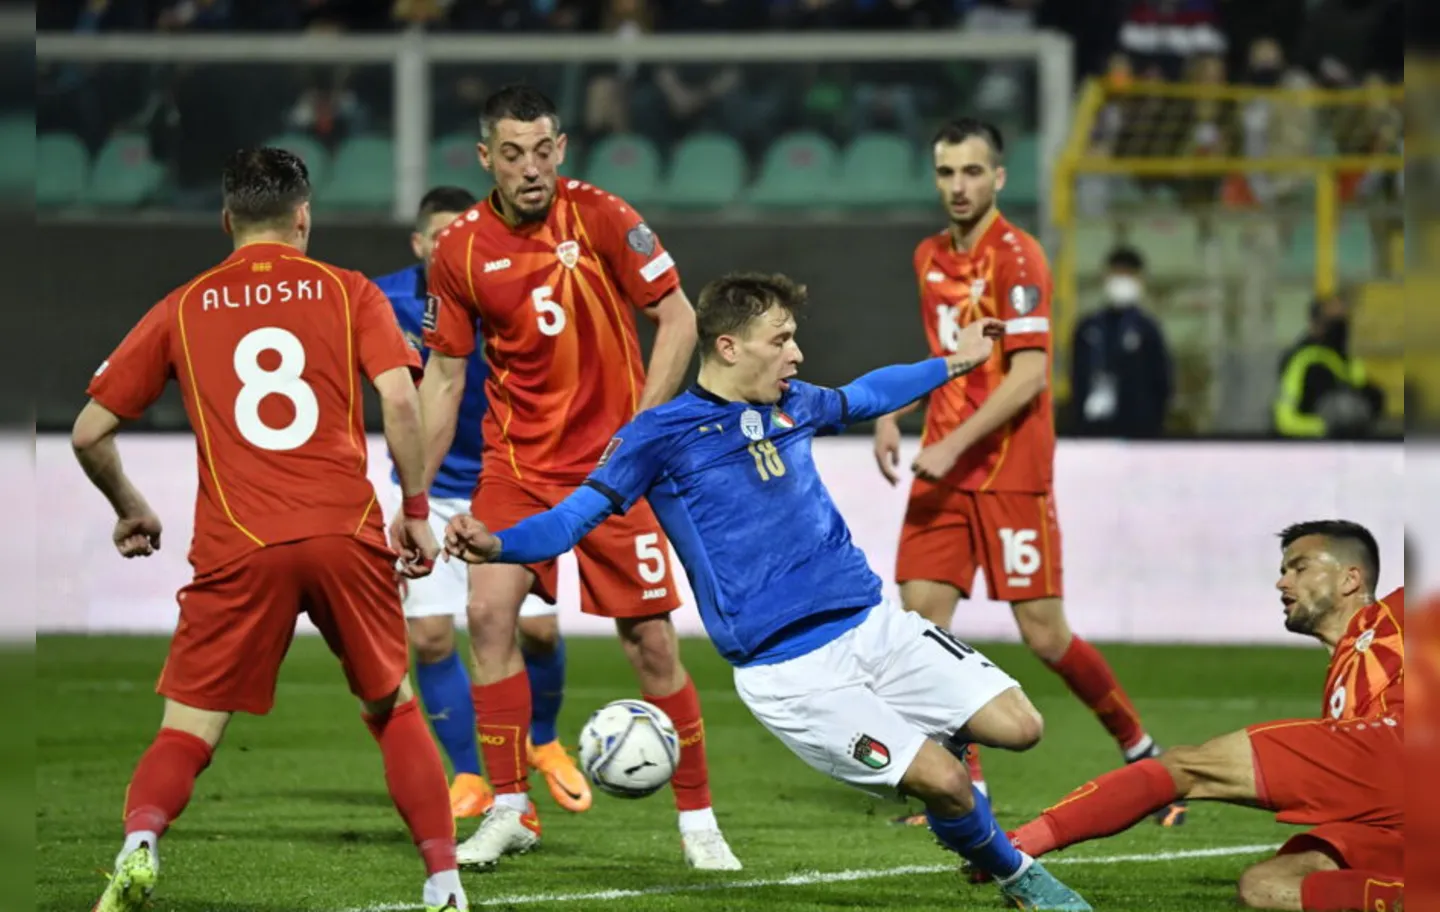 A Itália dominou a partida, mas não conseguiu balançar as redes